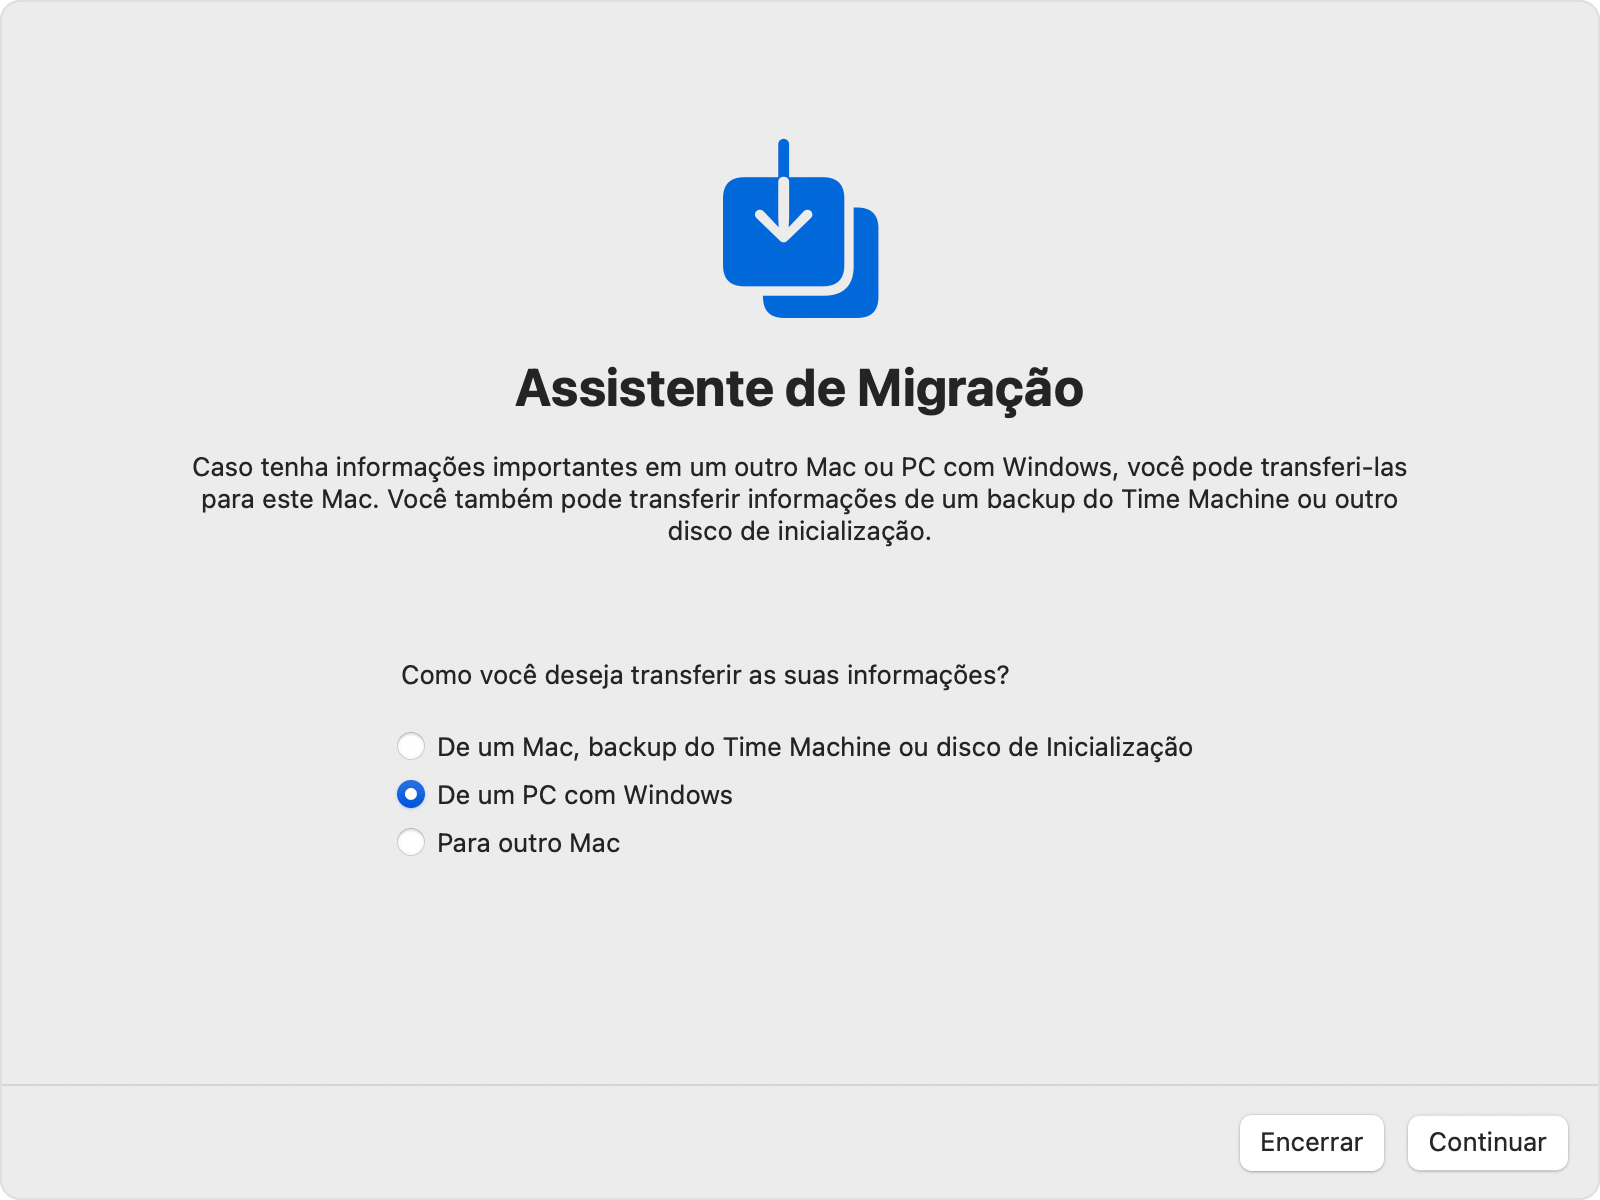 Transferência do Assistente de Migração do PC com Windows